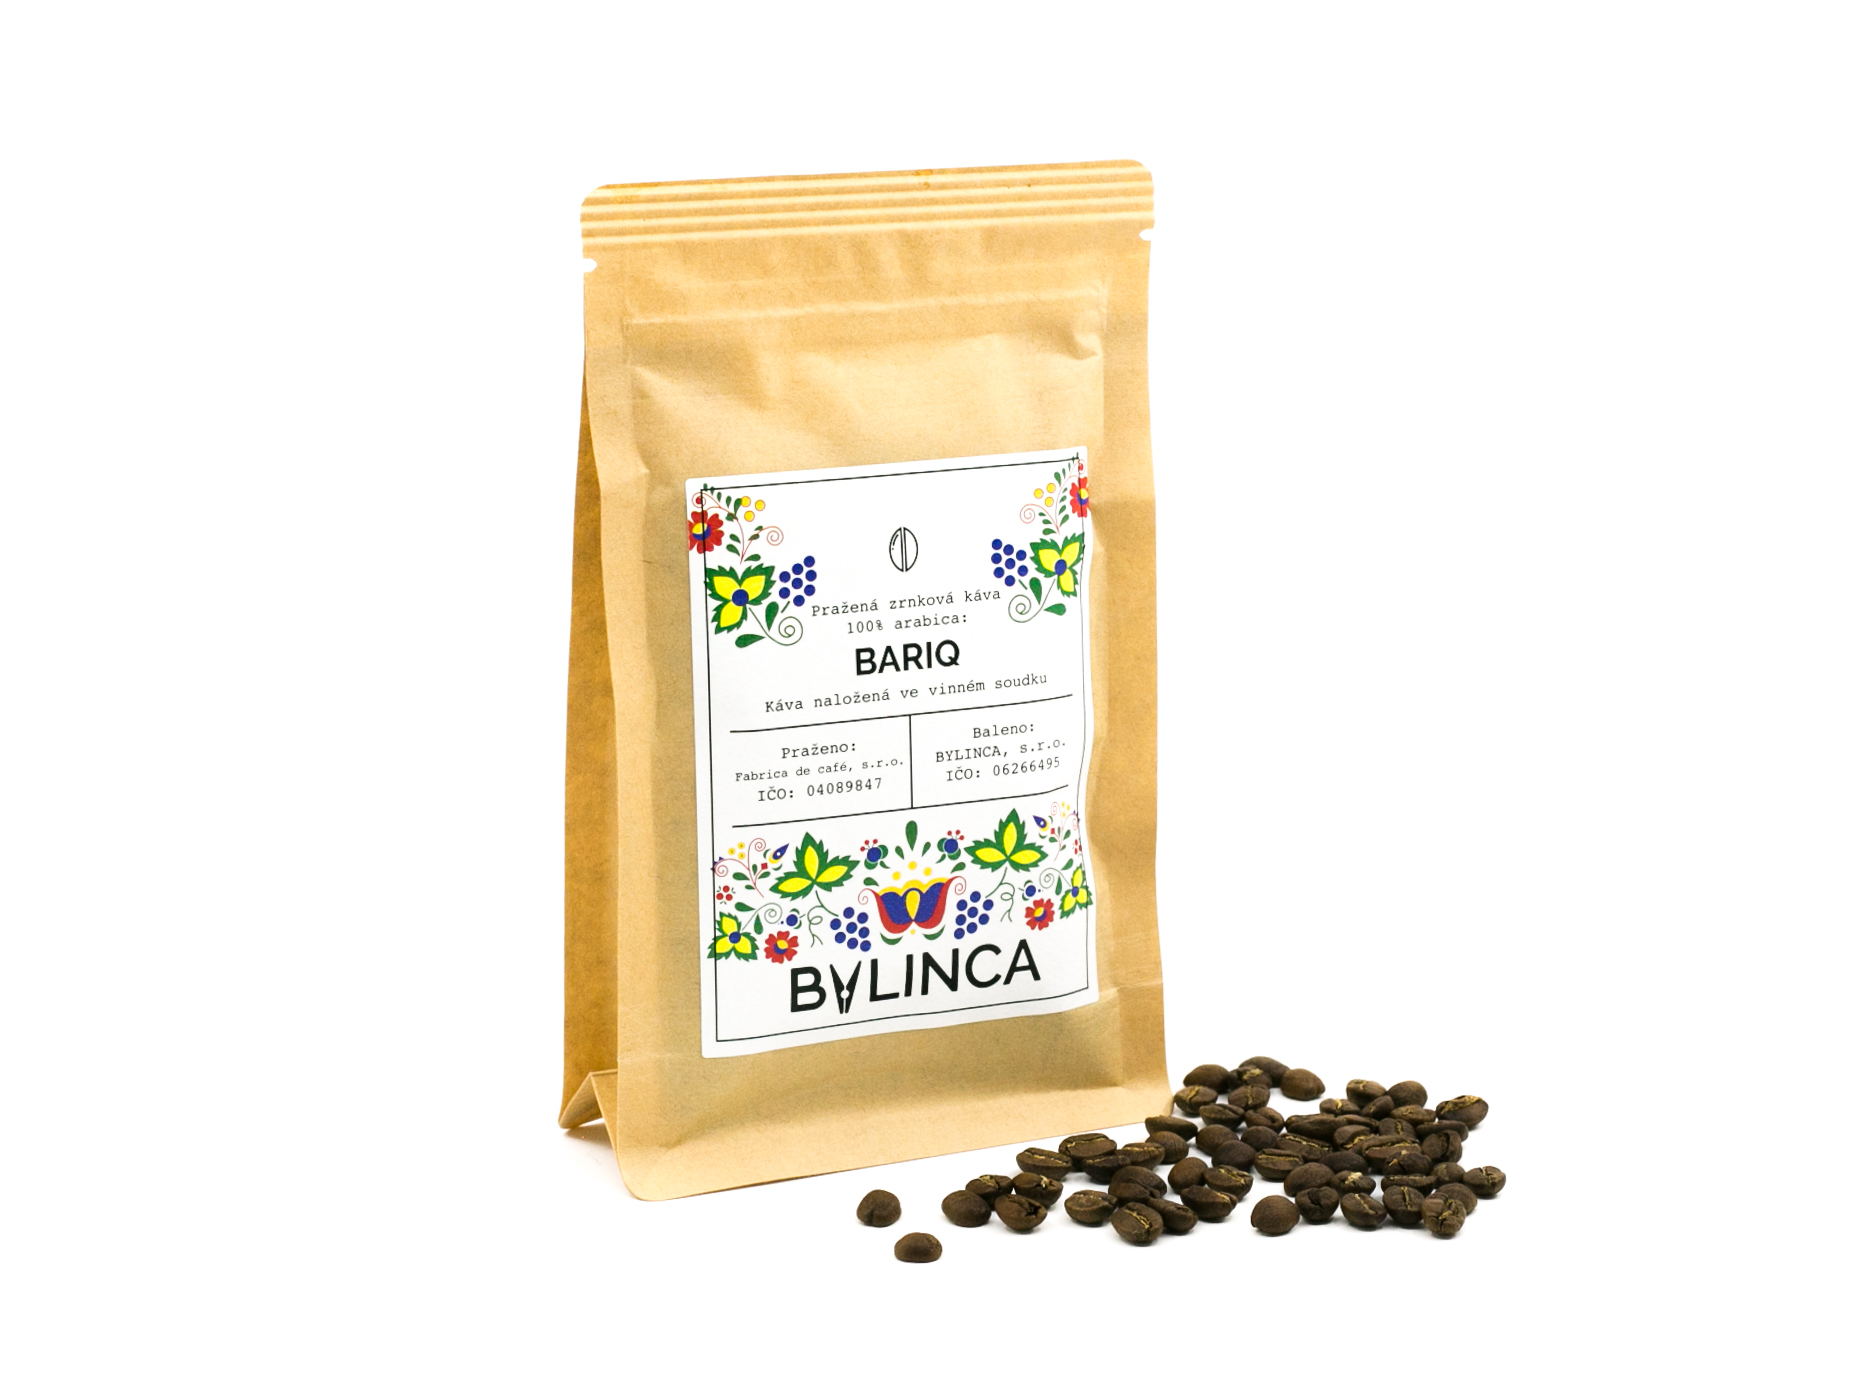 Zrnková káva: Bariq 100g, 250g, 500g, 1000g 1 ks: 250g